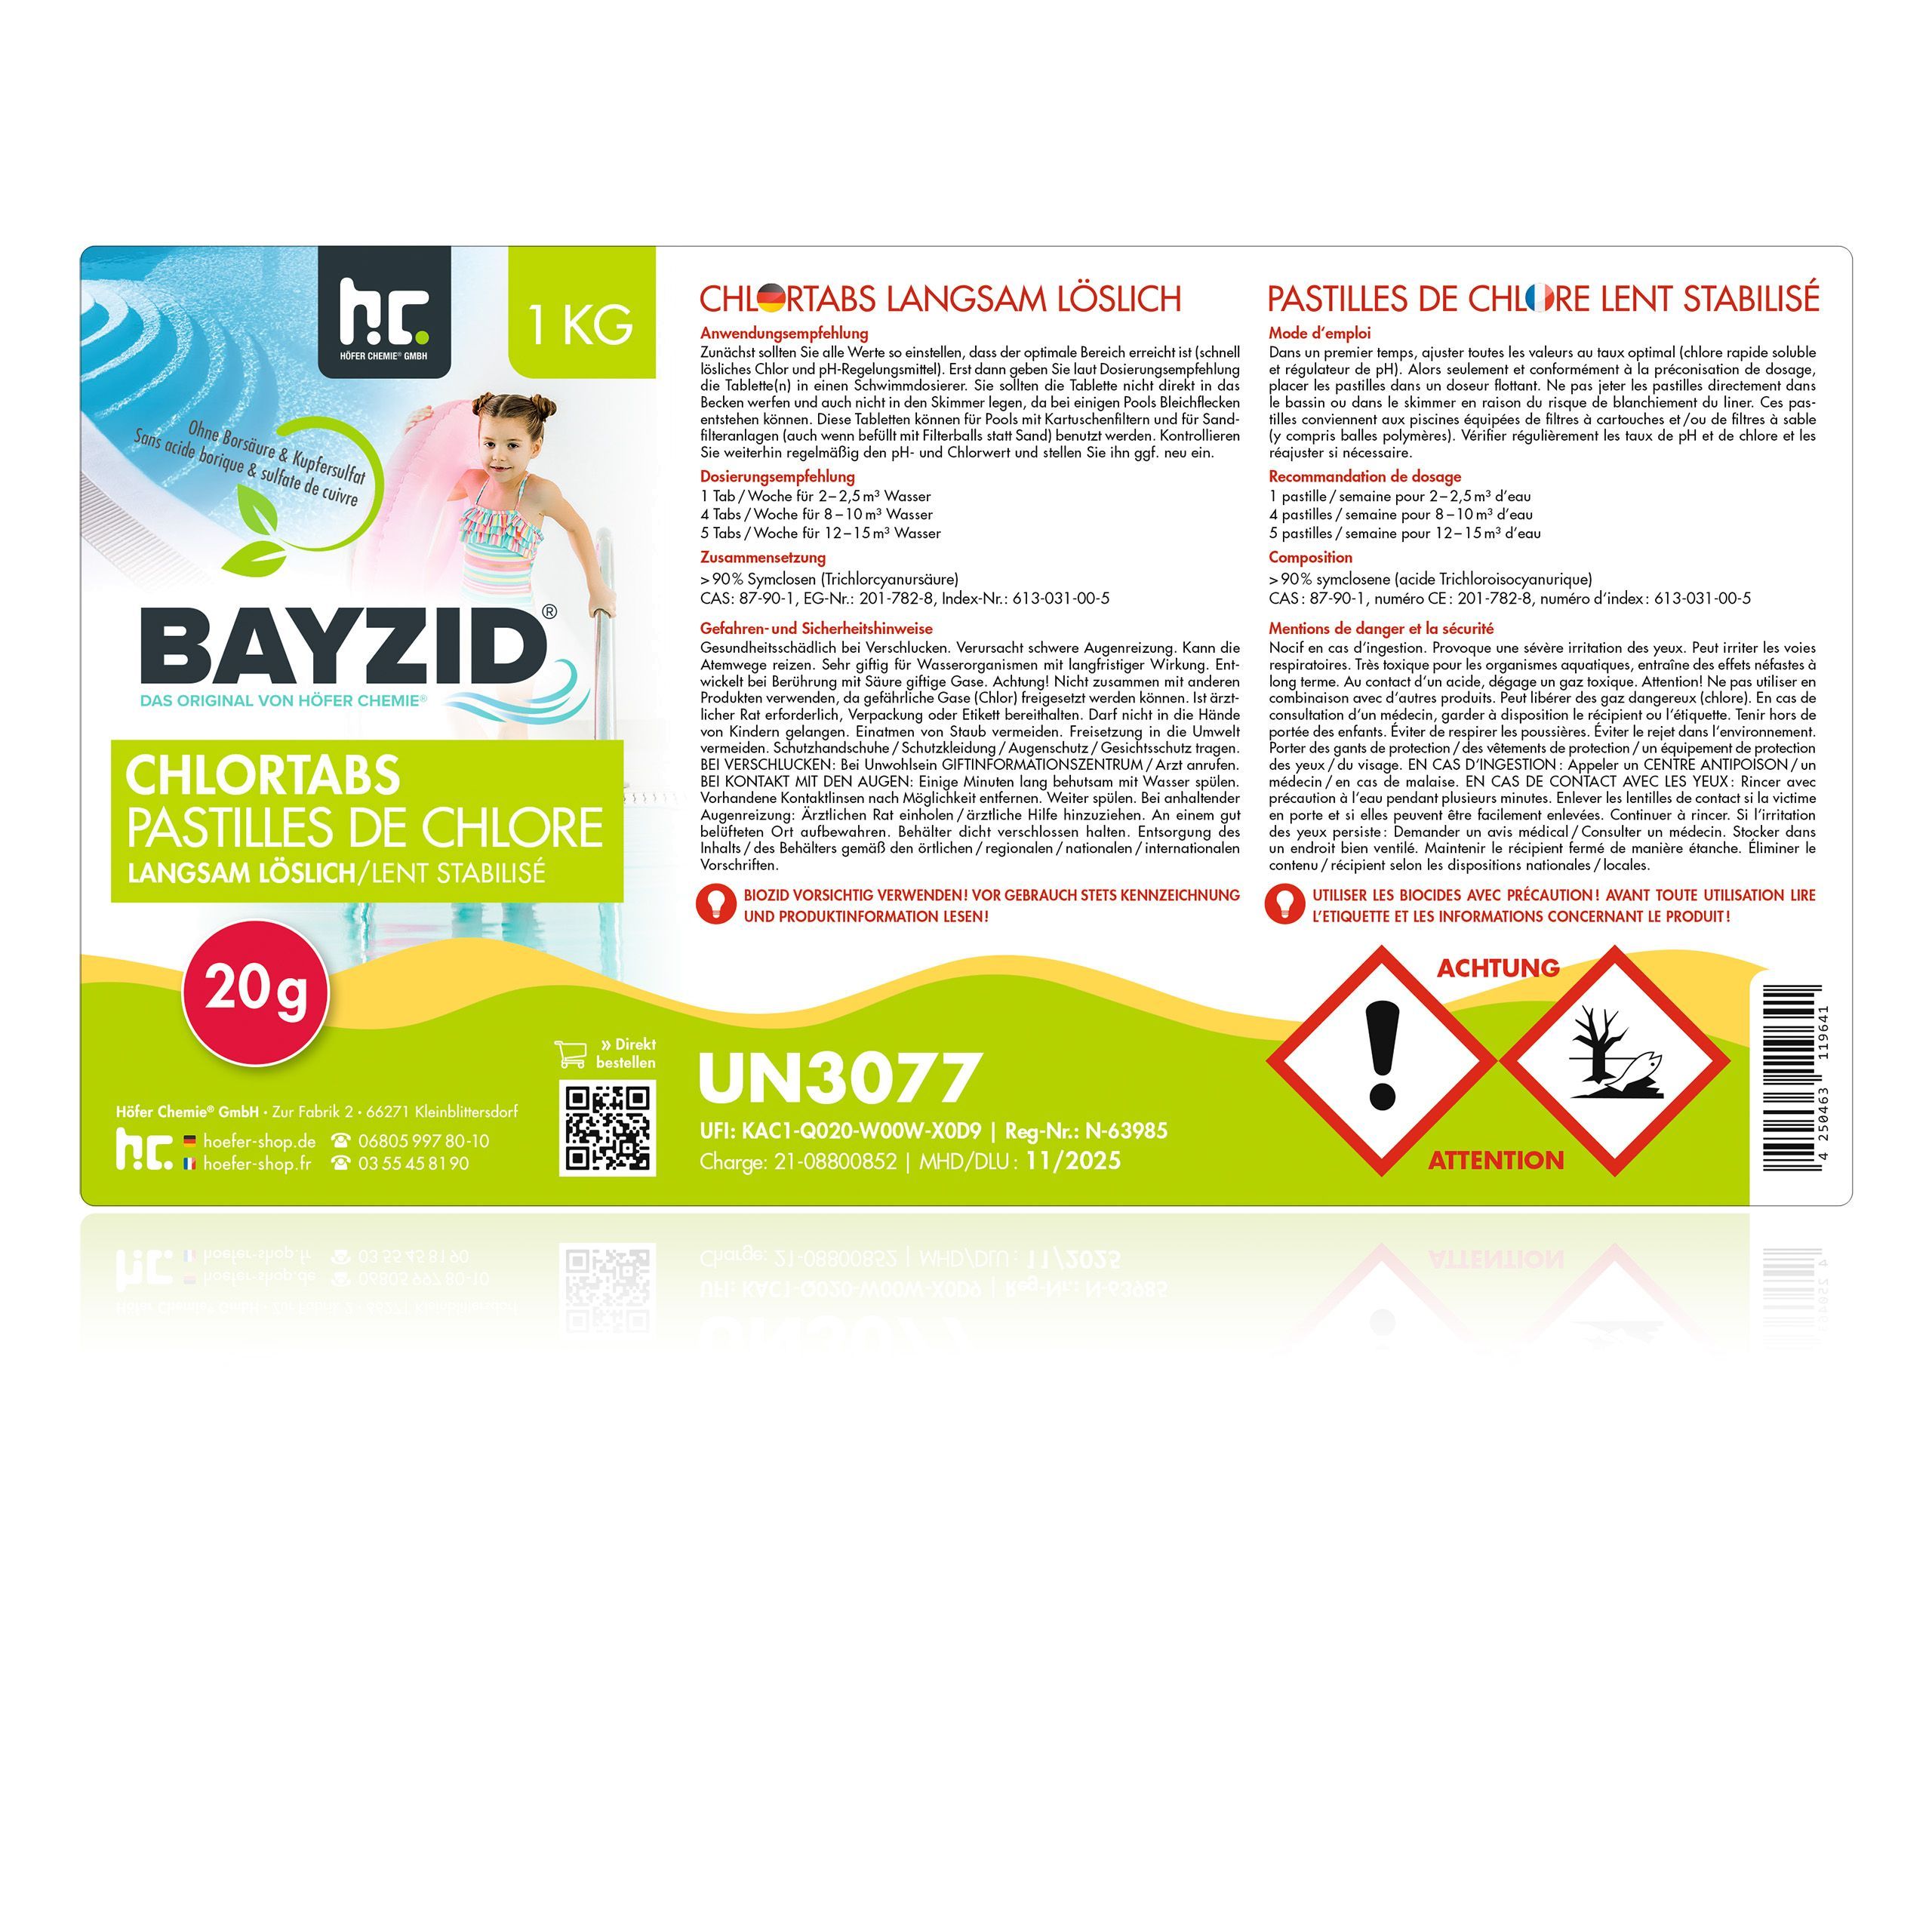 1 kg BAYZID® Chlortabs 20g langsam löslich